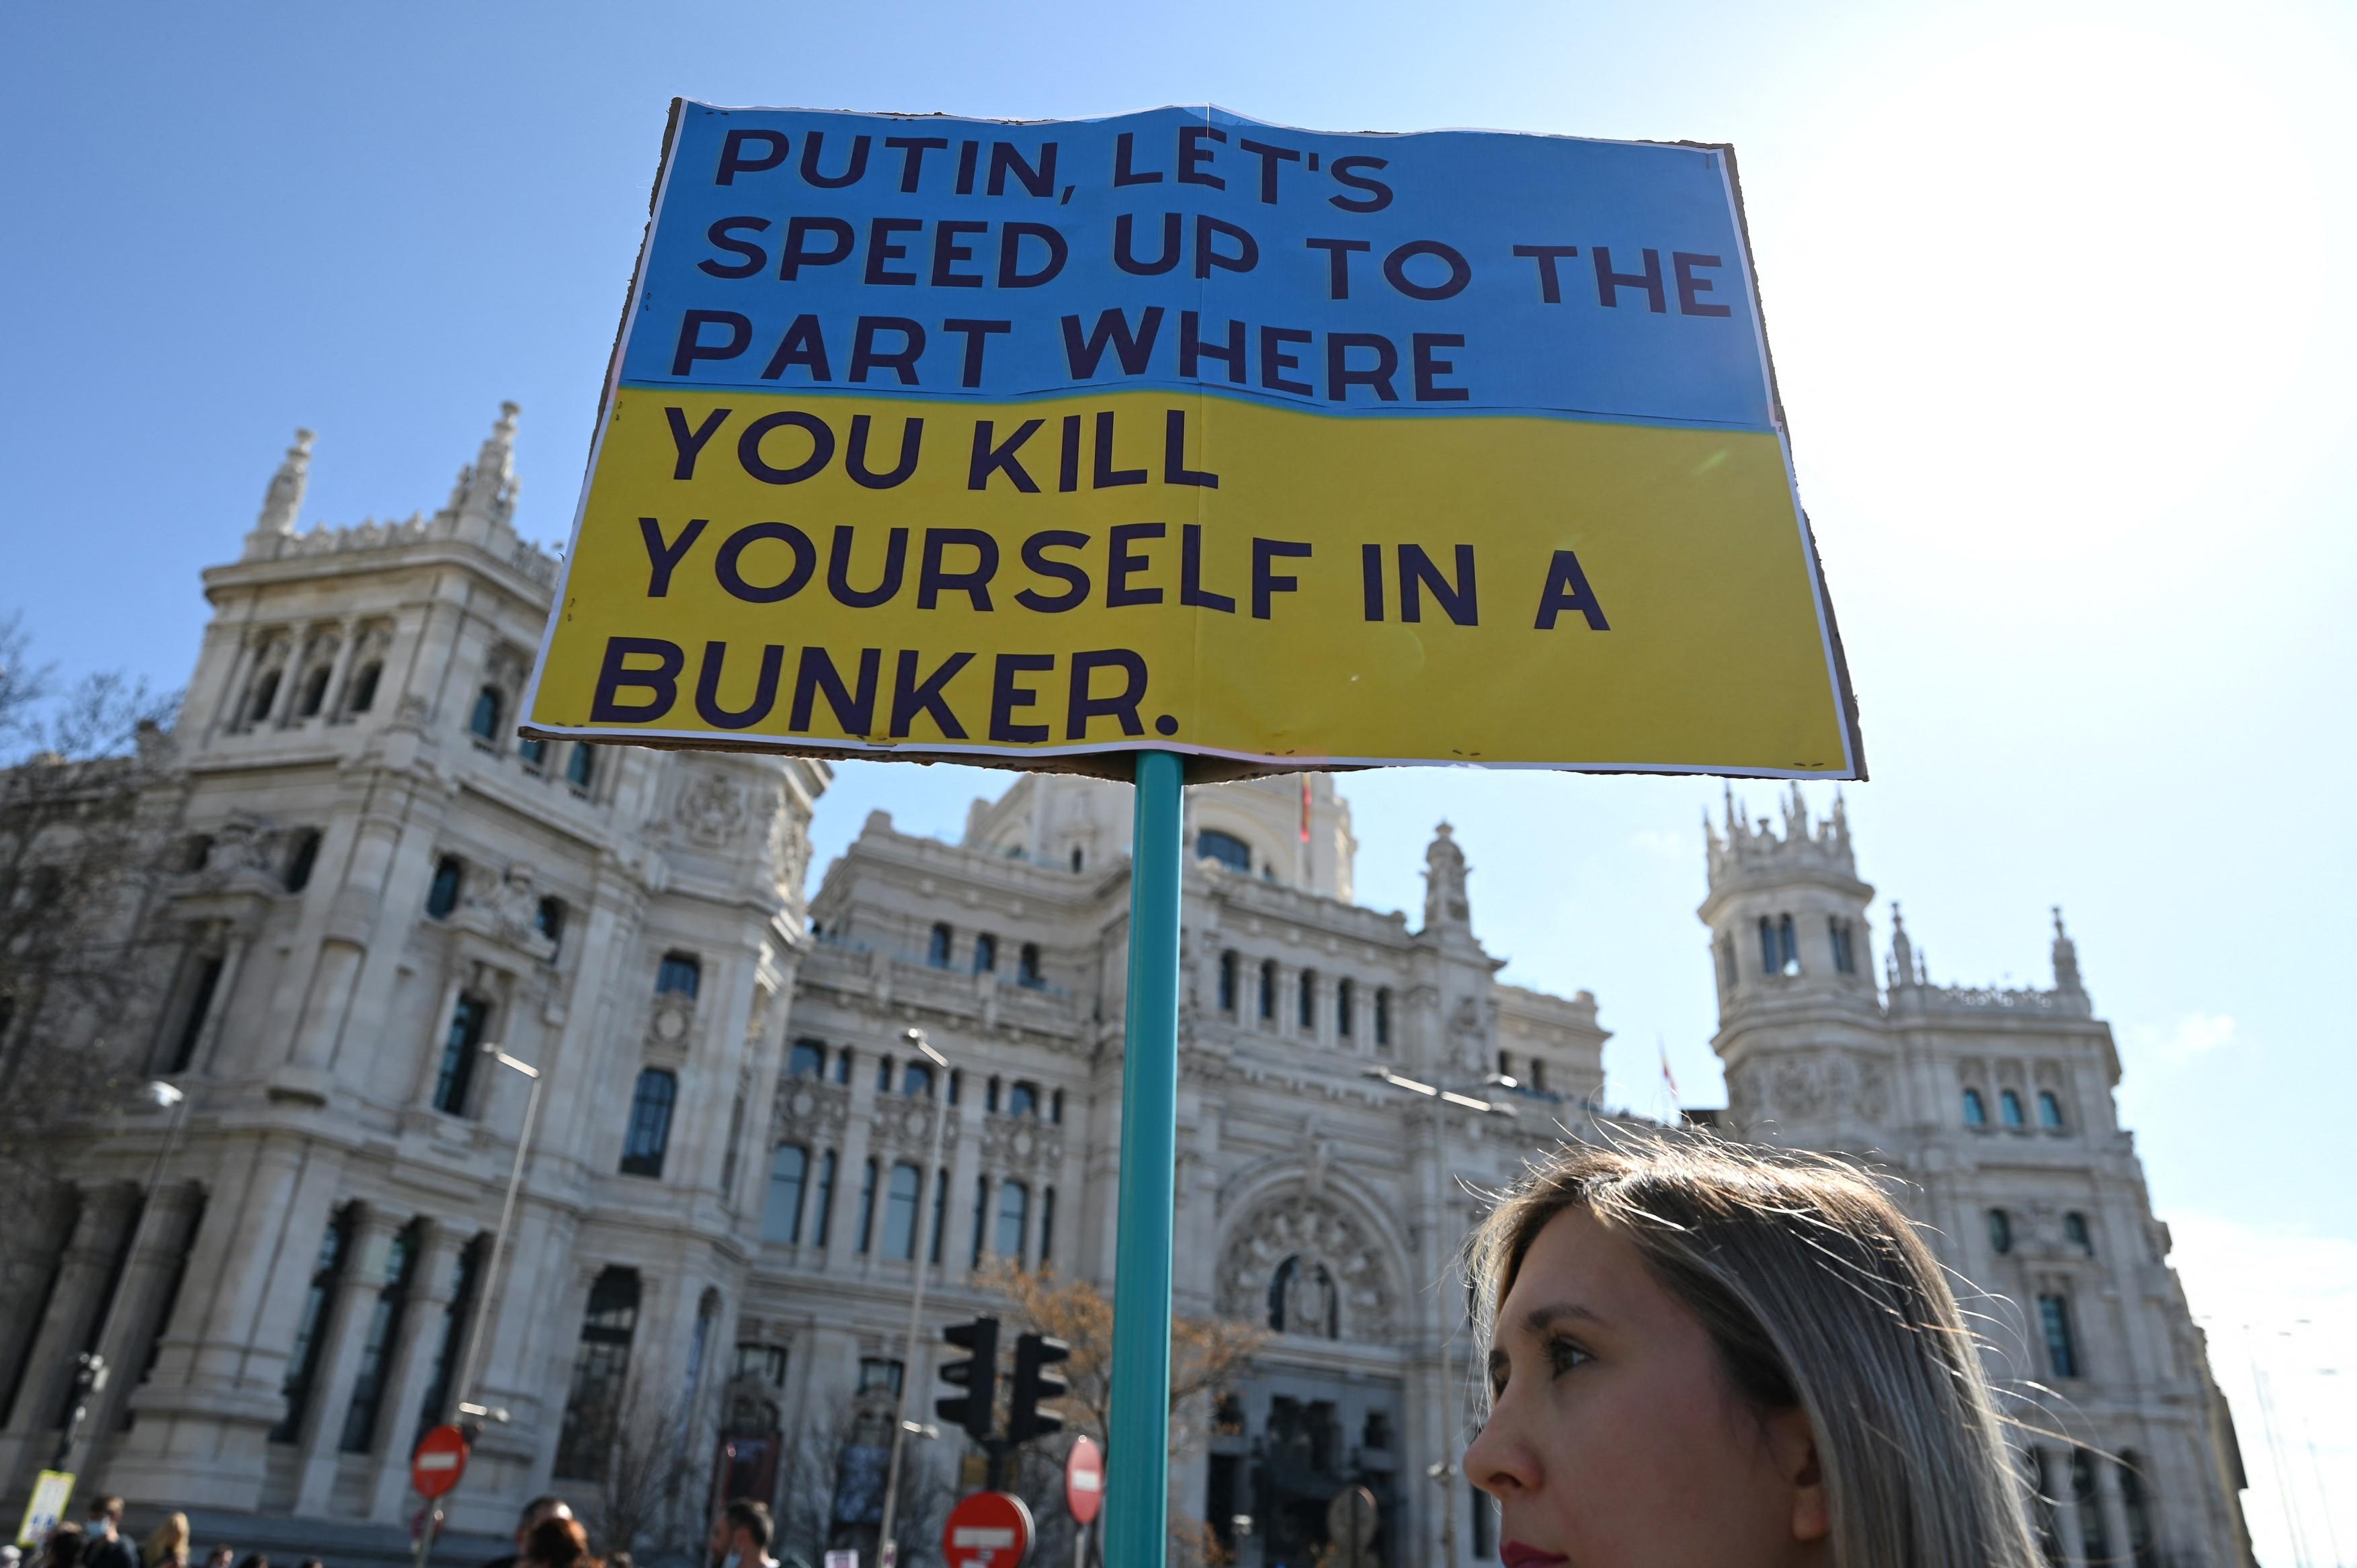 Lumea întreagă s-a dezlănțuit împotriva lui Putin. Sute de mii de oameni au ieșit în stradă furioși din cauza invadării Ucrainei